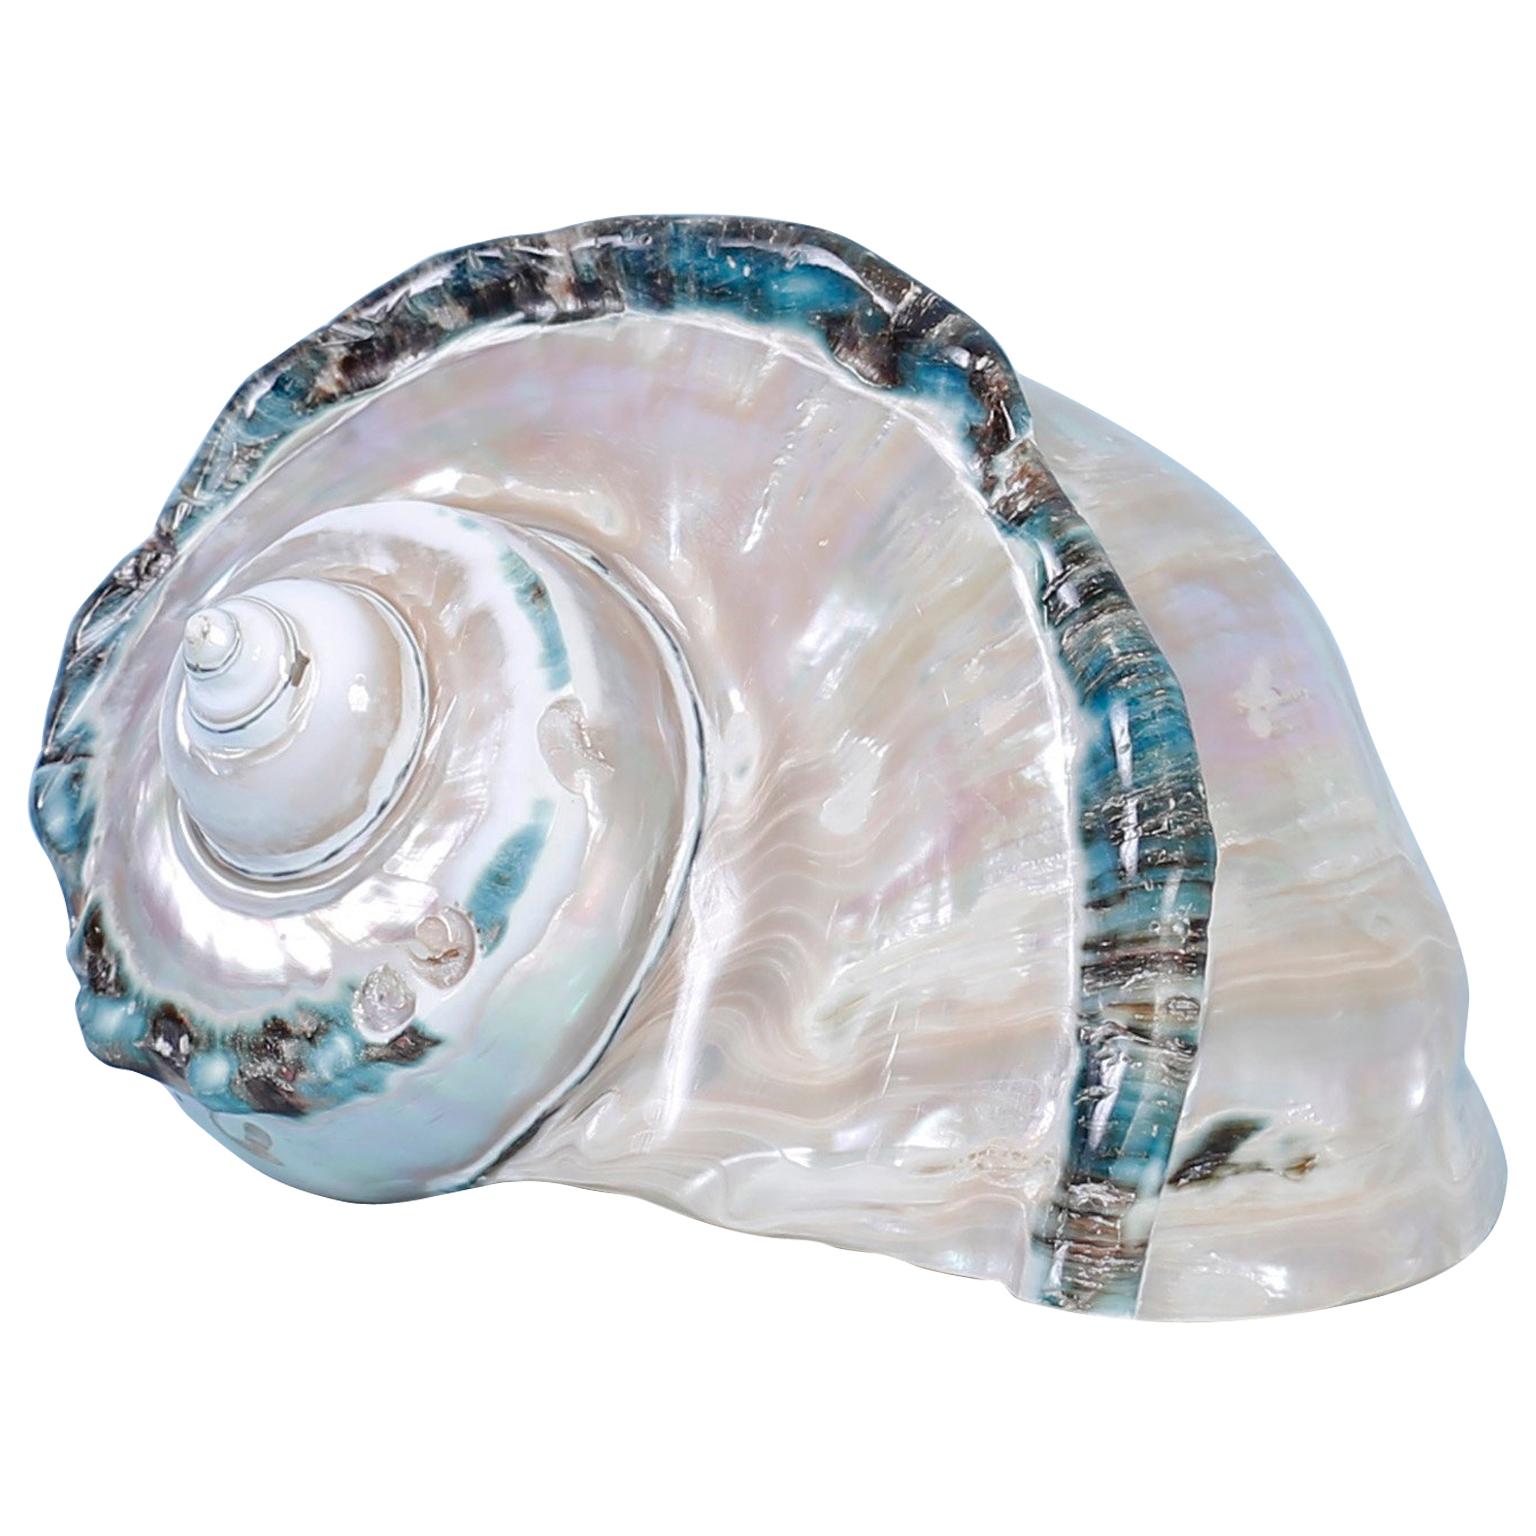 Turbo Marmoratus Seashell Specimen